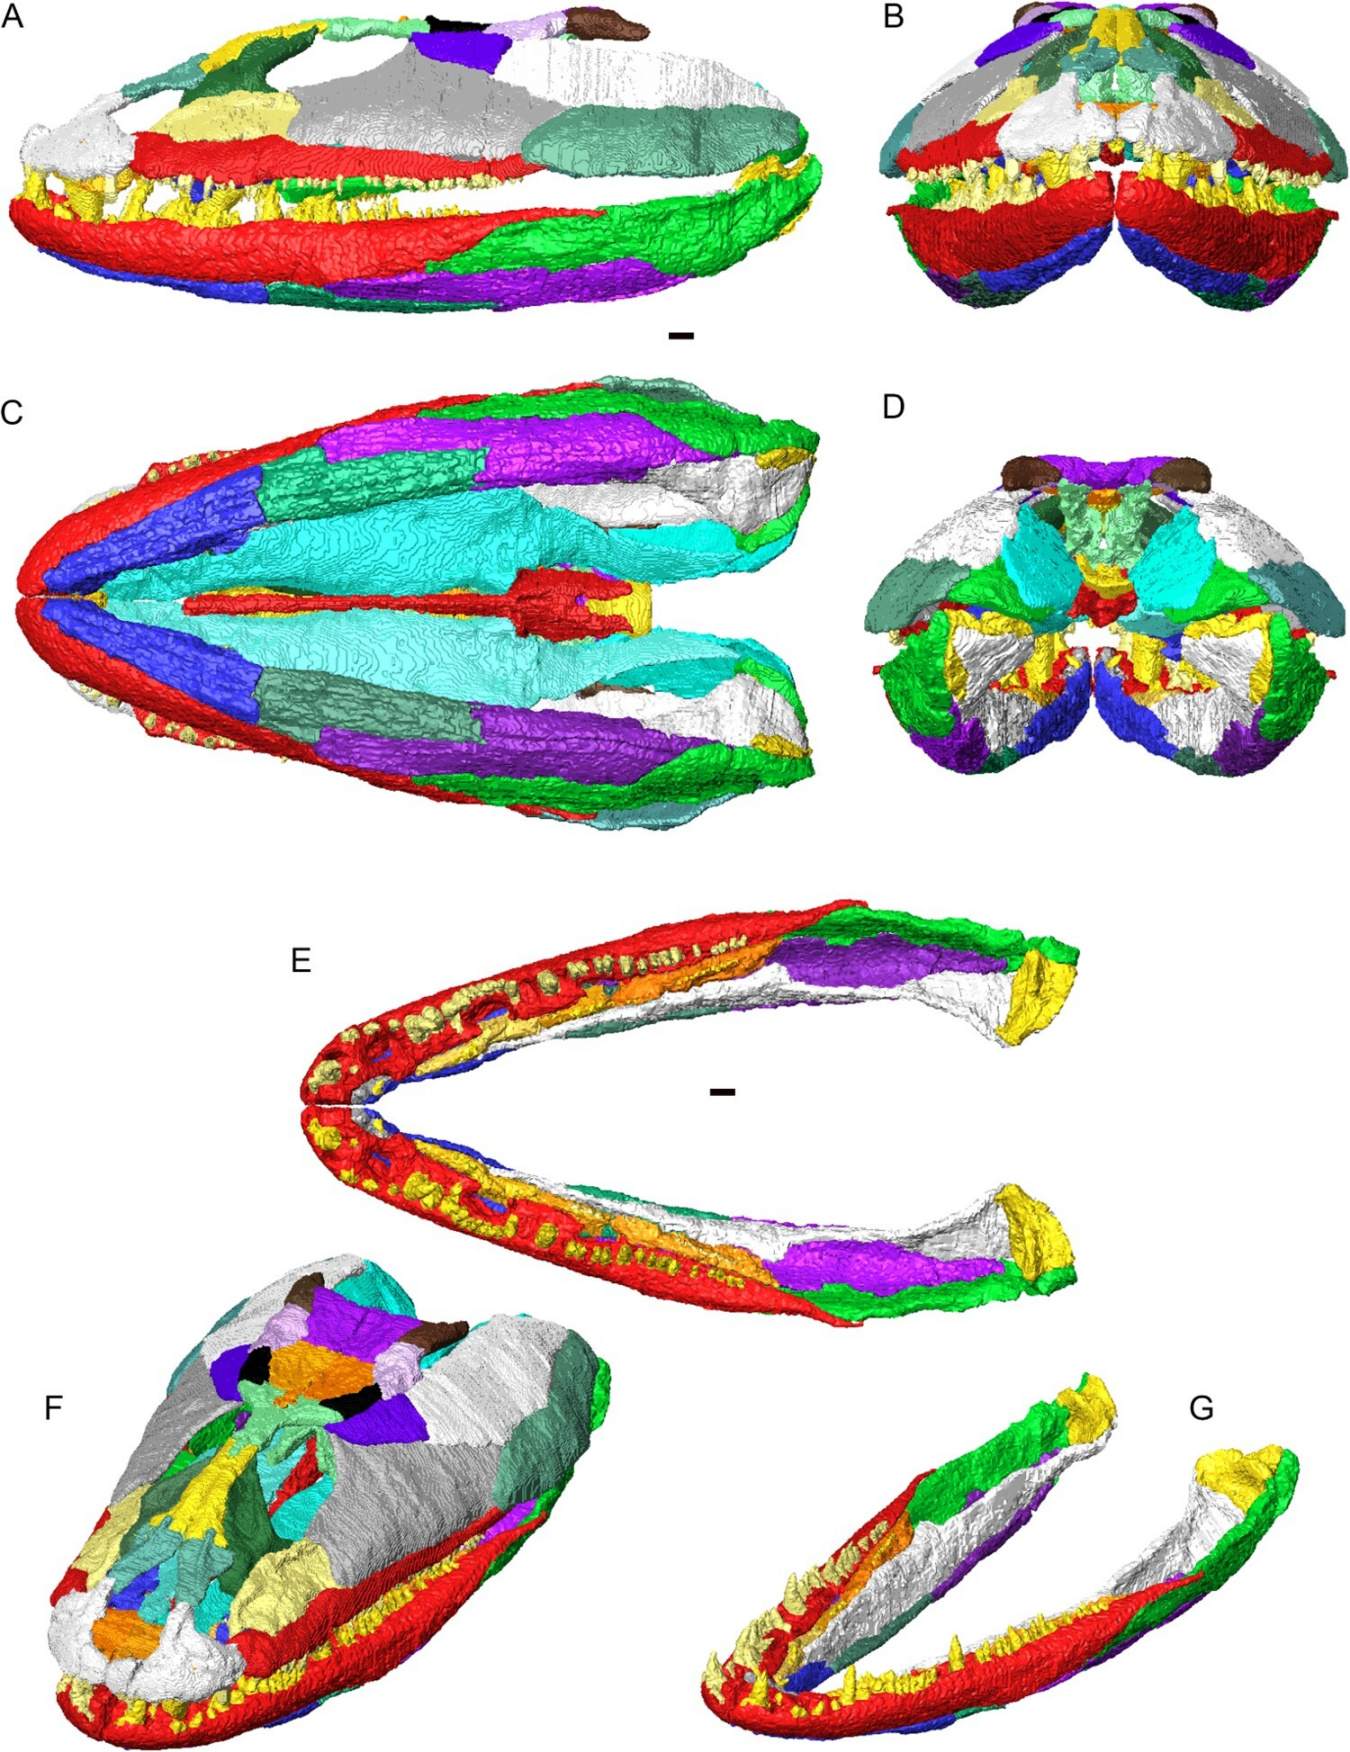 Crassigyrinus scoticus の頭蓋骨と下顎の関節の 3D 再構成。 個々の骨が異なる色で表示されます。 A、左側面図。 B、前面図。 C、腹側から見た図。 D、後面図。 E、背面から見た関節のある下顎 (頭蓋骨なし)。 F、頭蓋と下顎の背側斜視図。 G、背側斜視図での関節のある下顎。